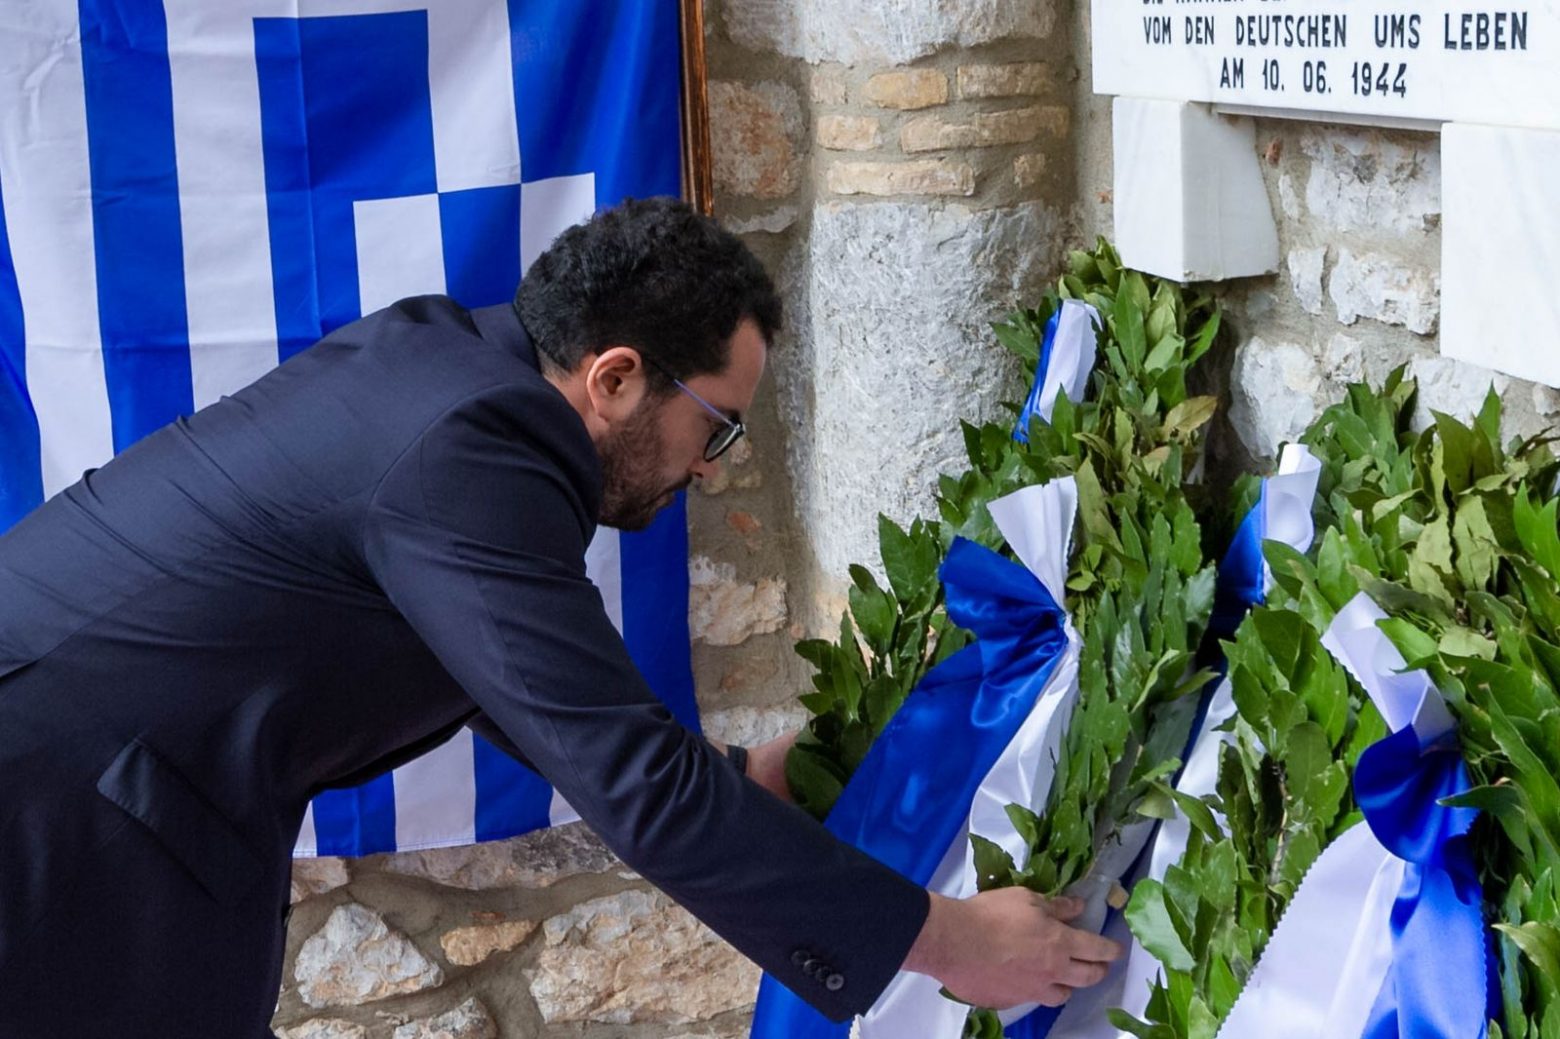 Σπυρόπουλος: Στο Δίστομο εκκρεμεί η δικαίωση, για επανόρθωση και αποκατάσταση για τα εγκλήματα που διέπραξε το ναζιστικό καθεστώς